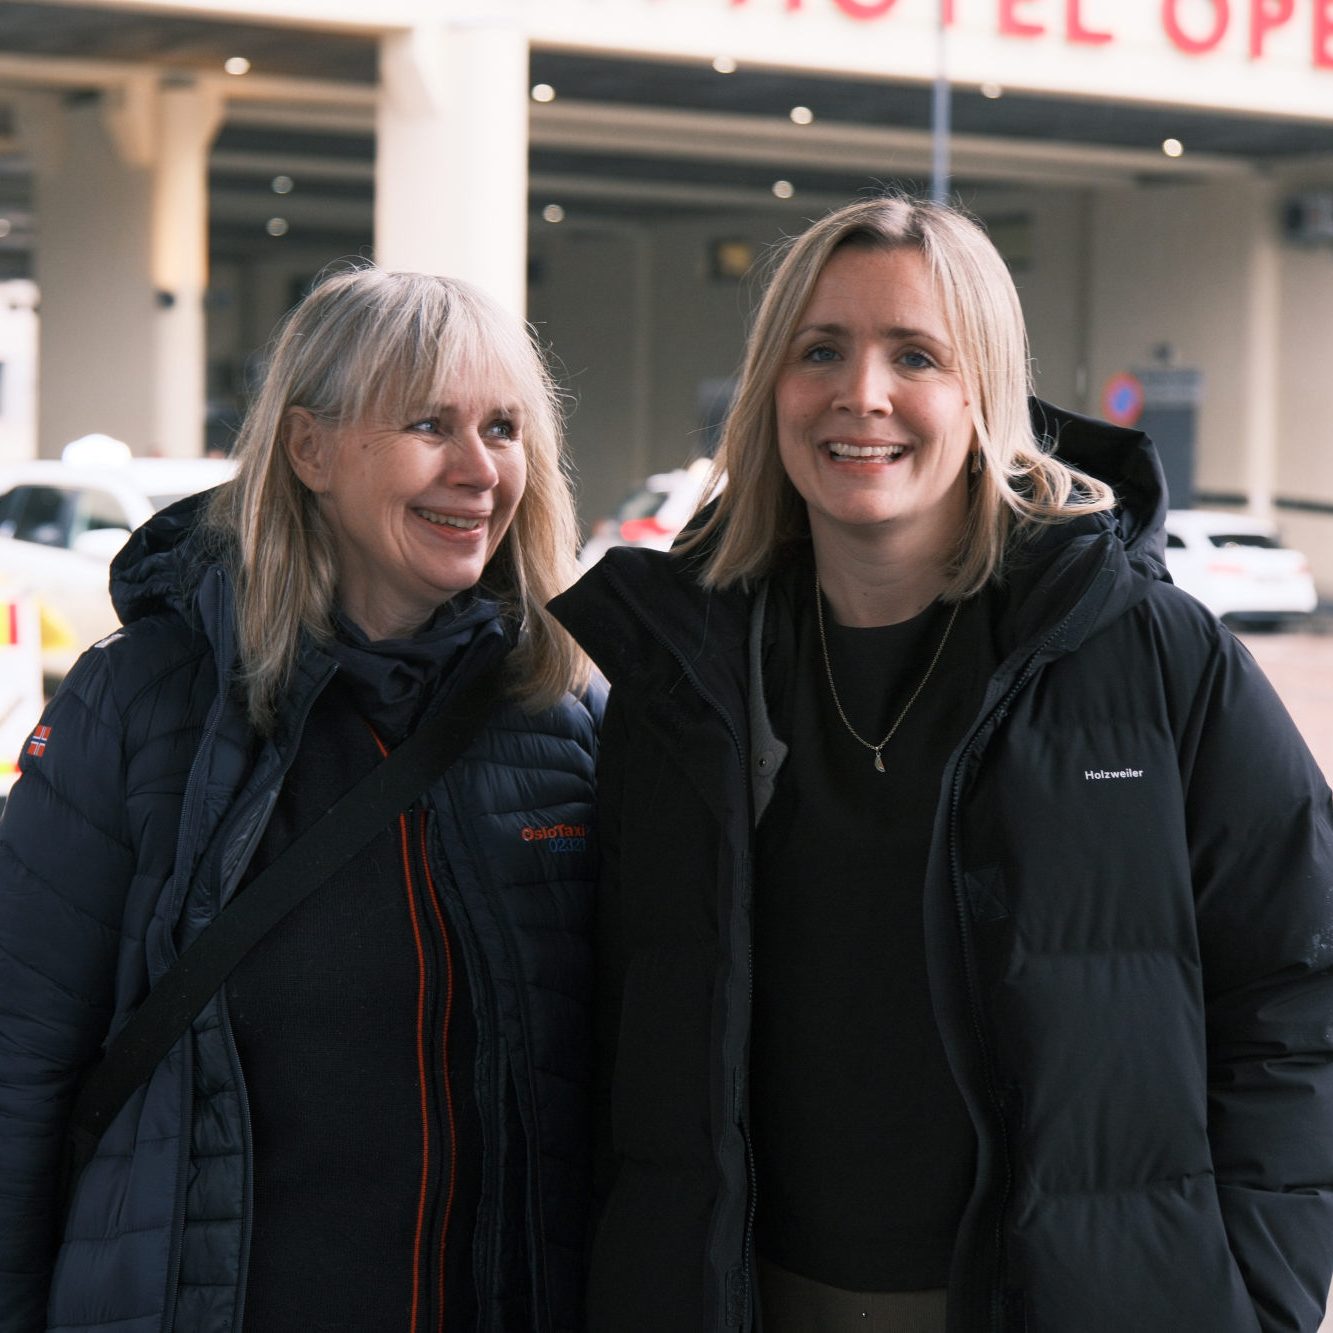 Leder av Taxiforbundet avdeling Oslo, Anne Karlsen Hove, og byråd for miljø og samferdsel, Marit Vea.